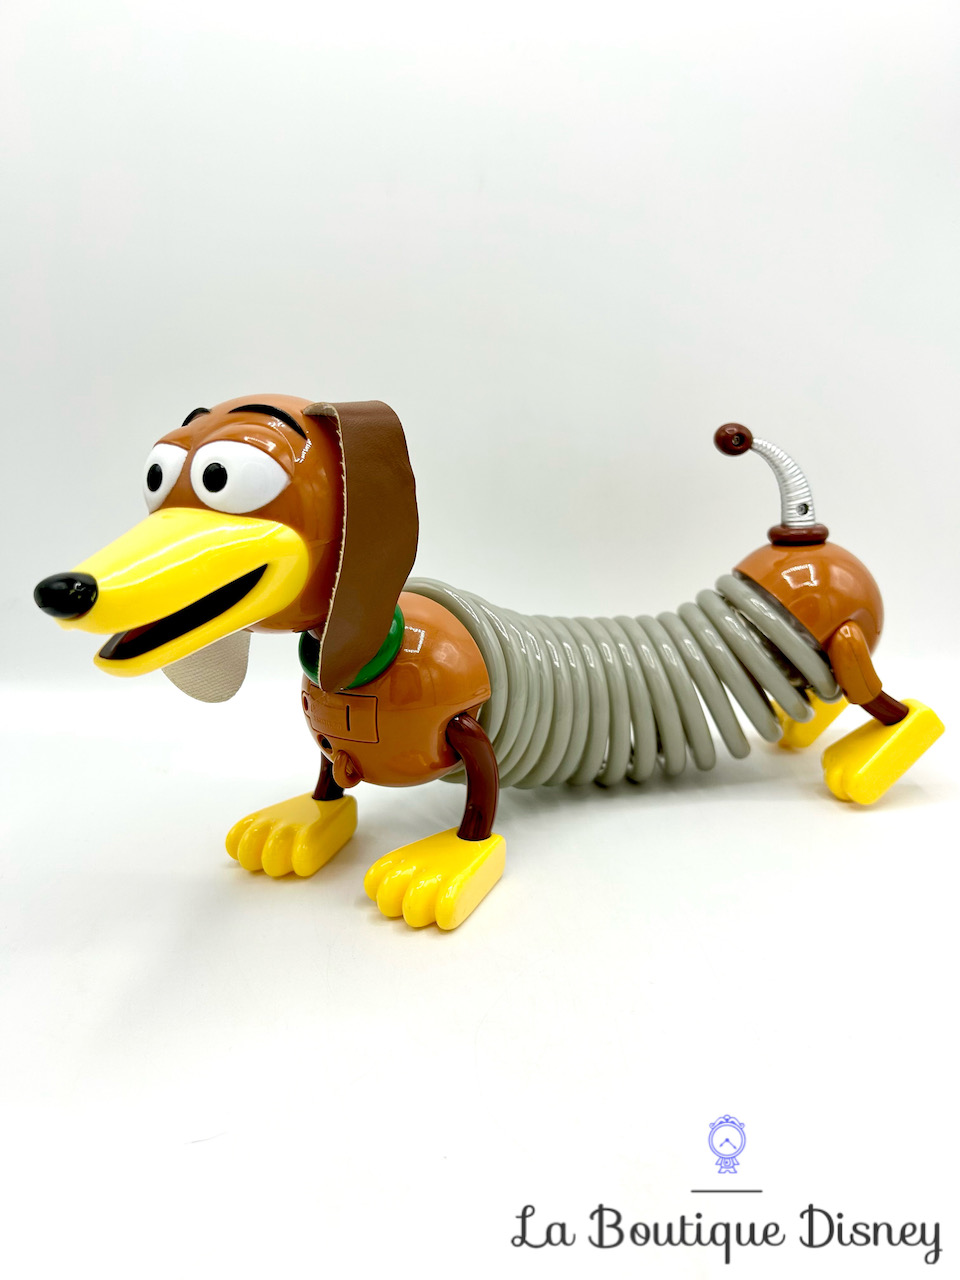 Slinky Dog - Toy Story!!! Zig Zag, Super Stretchy, Playing with Jessie!!! 